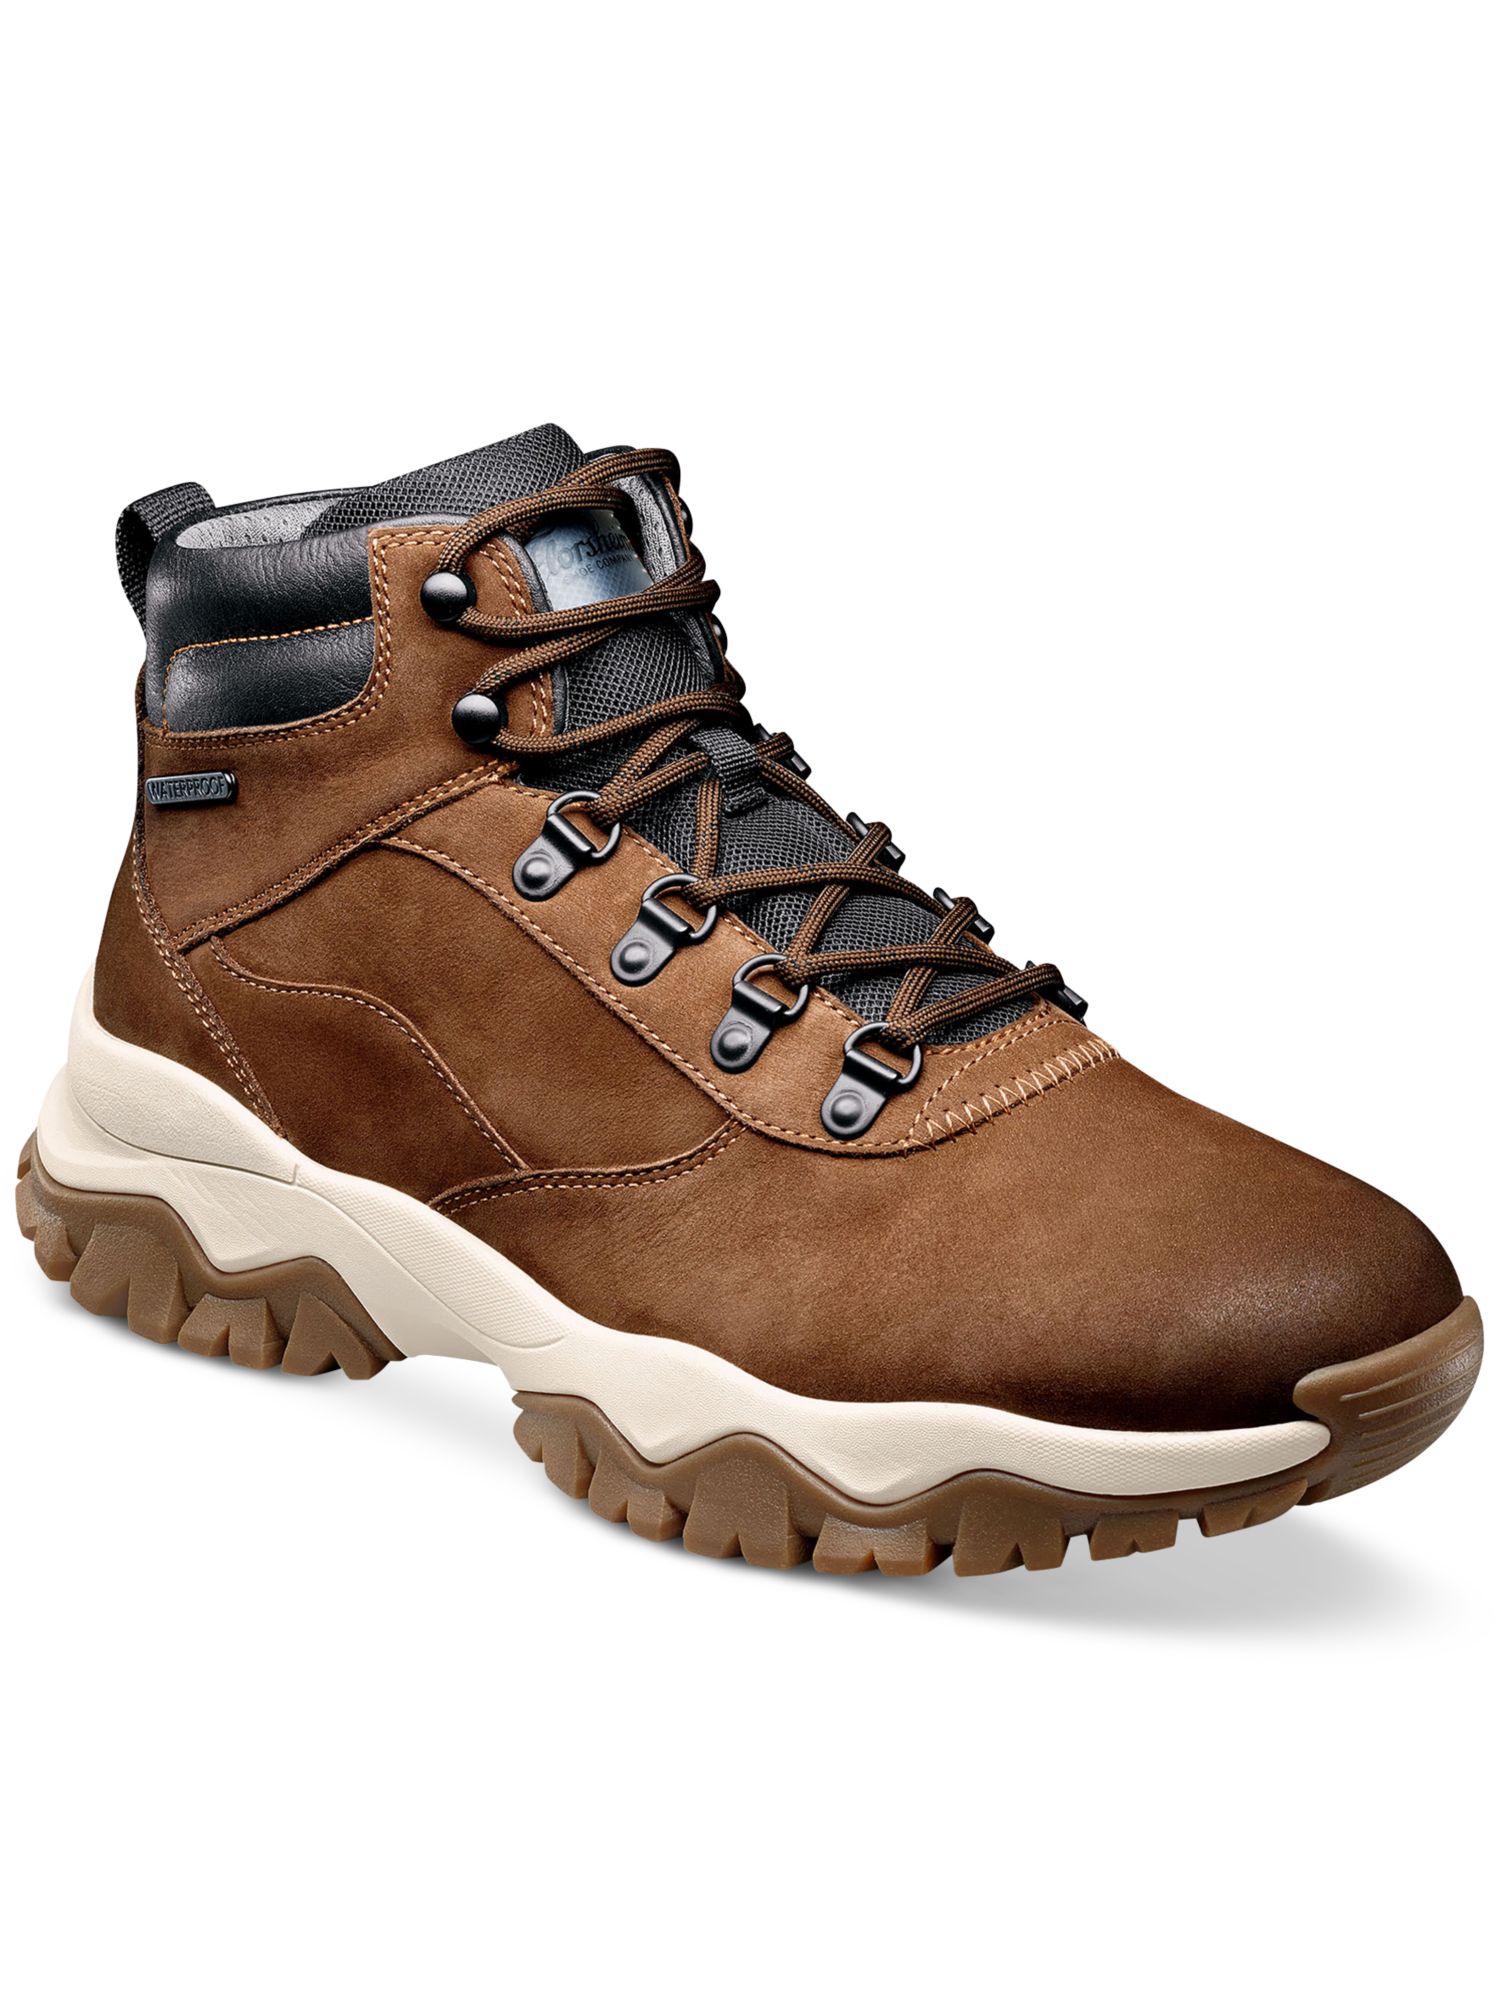 FLORSHEIM Mens Brown Xplor Alpine Round Toe Block Heel Leather Boots Shoes 7.5 M